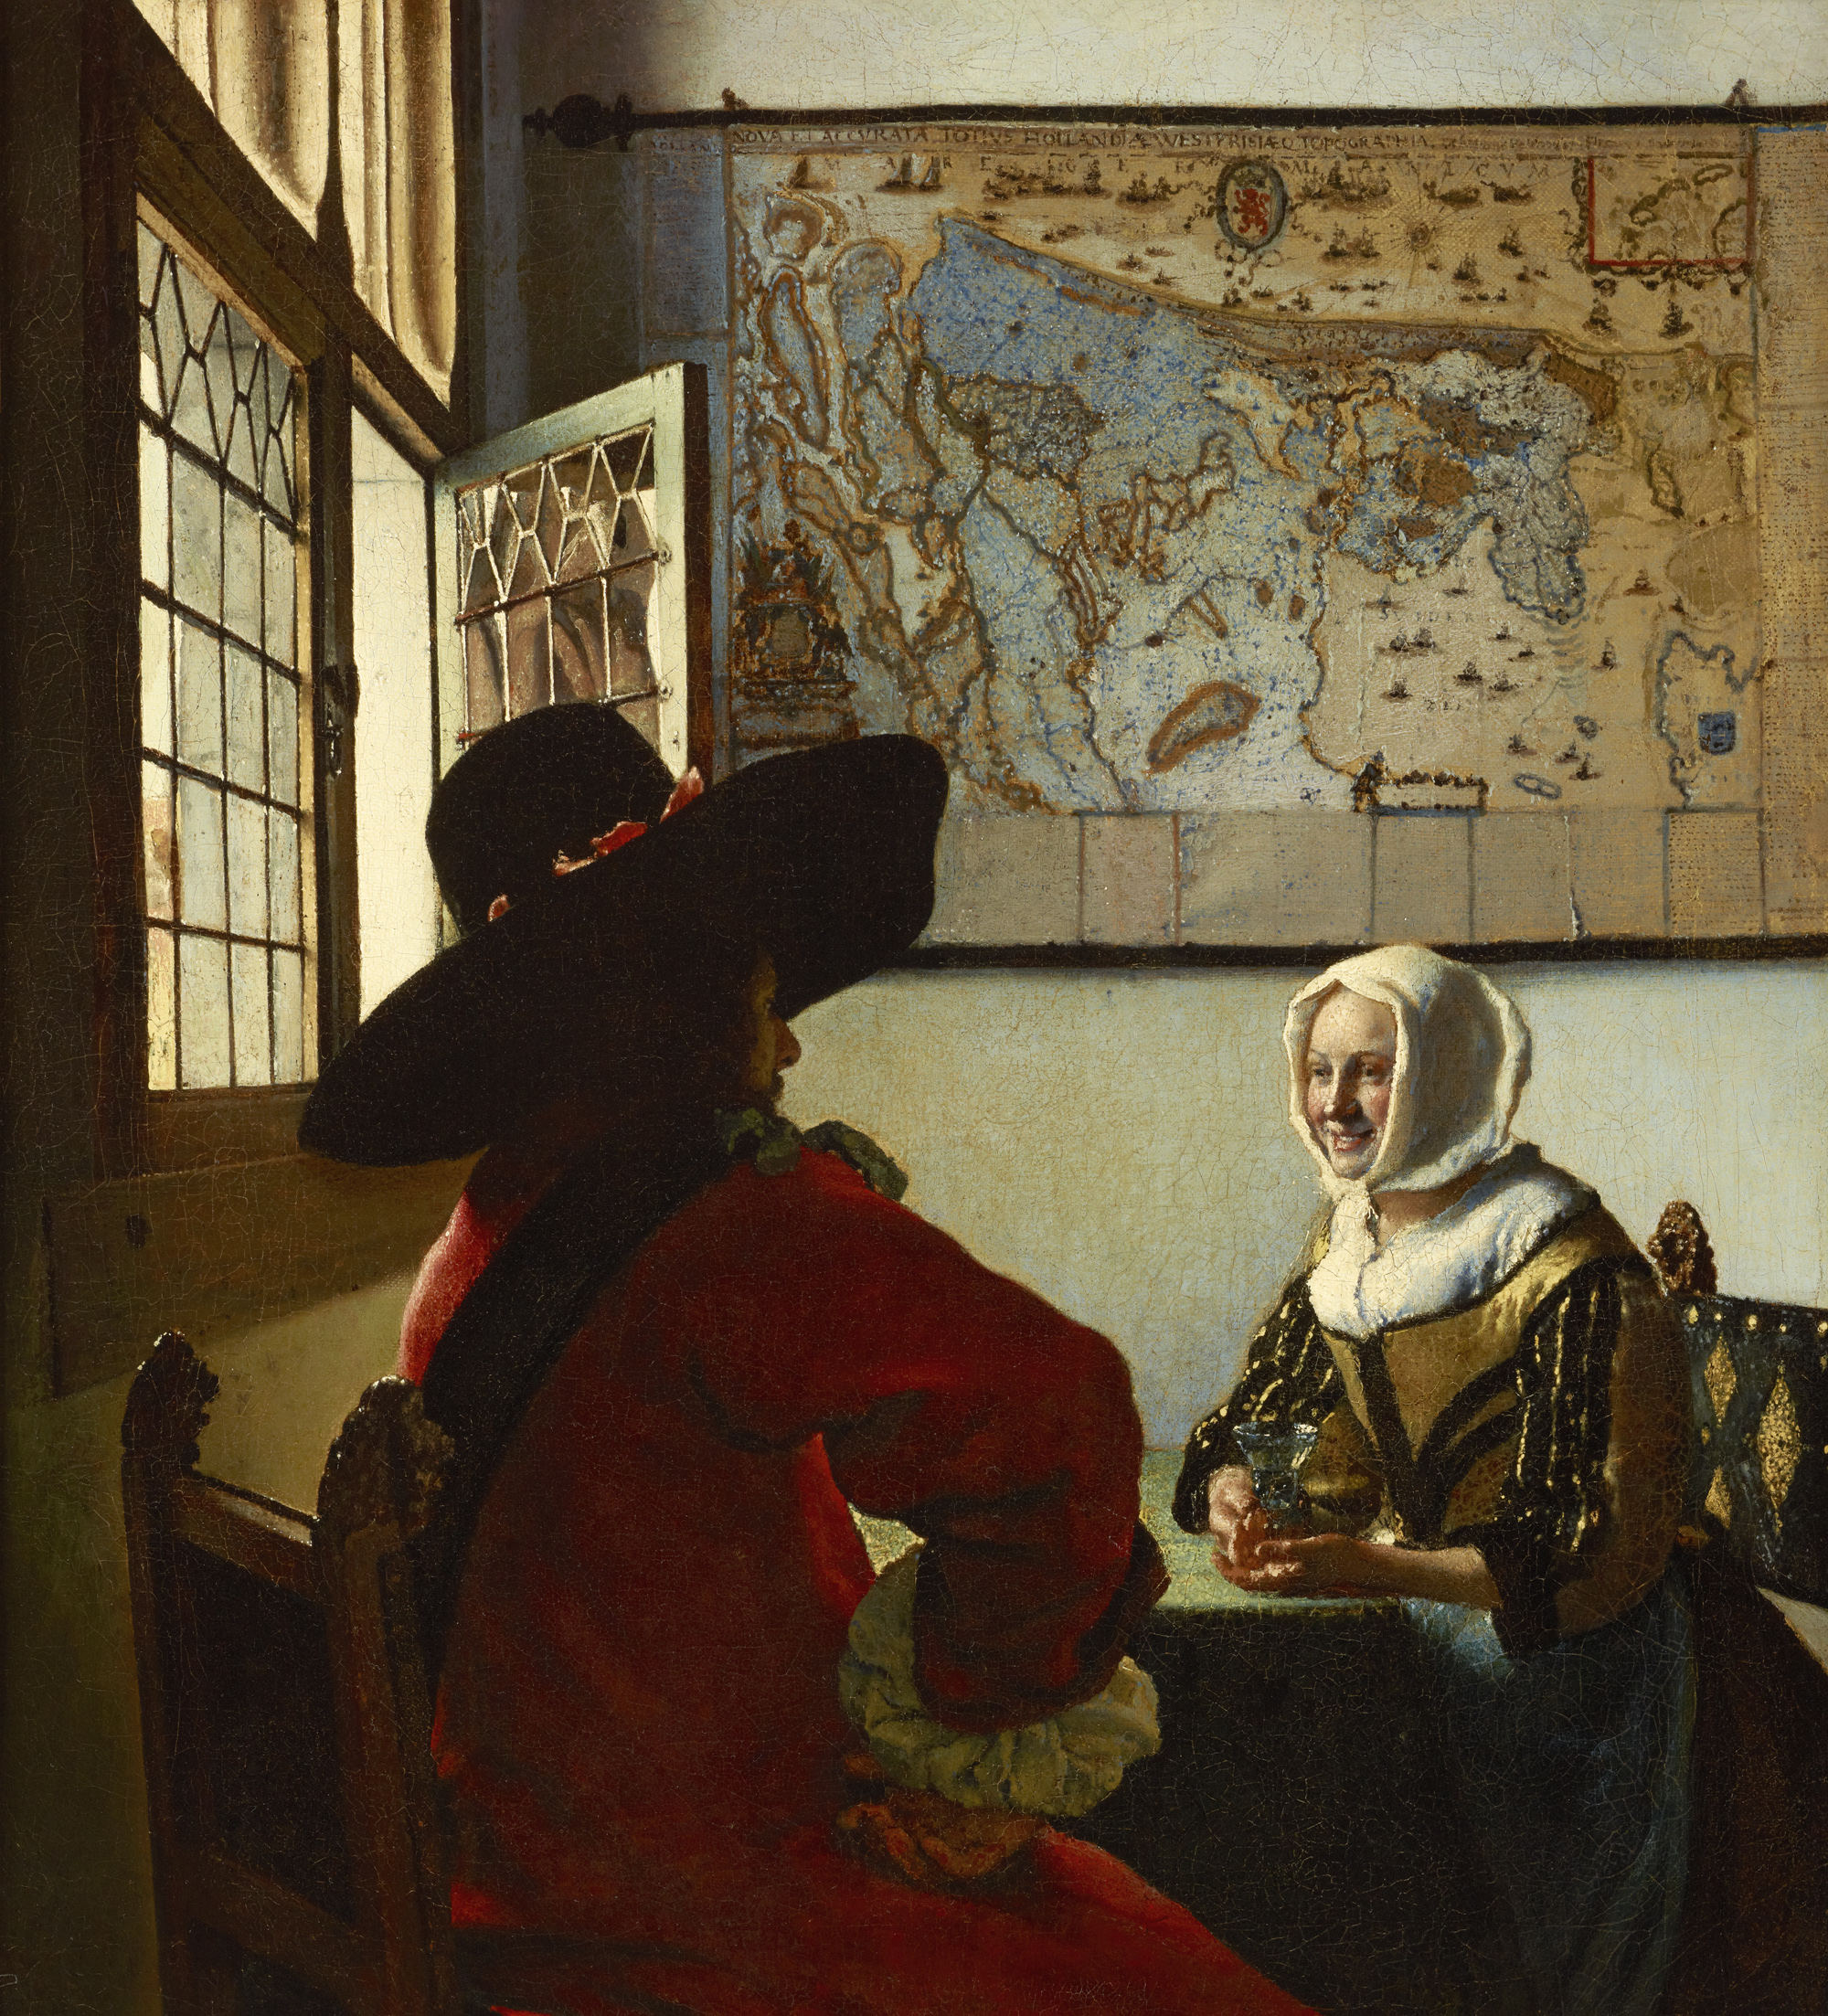 士官と笑う娘 by Johannes Vermeer - 1657年頃 - 19 7/8 x 18 1/8 インチ 